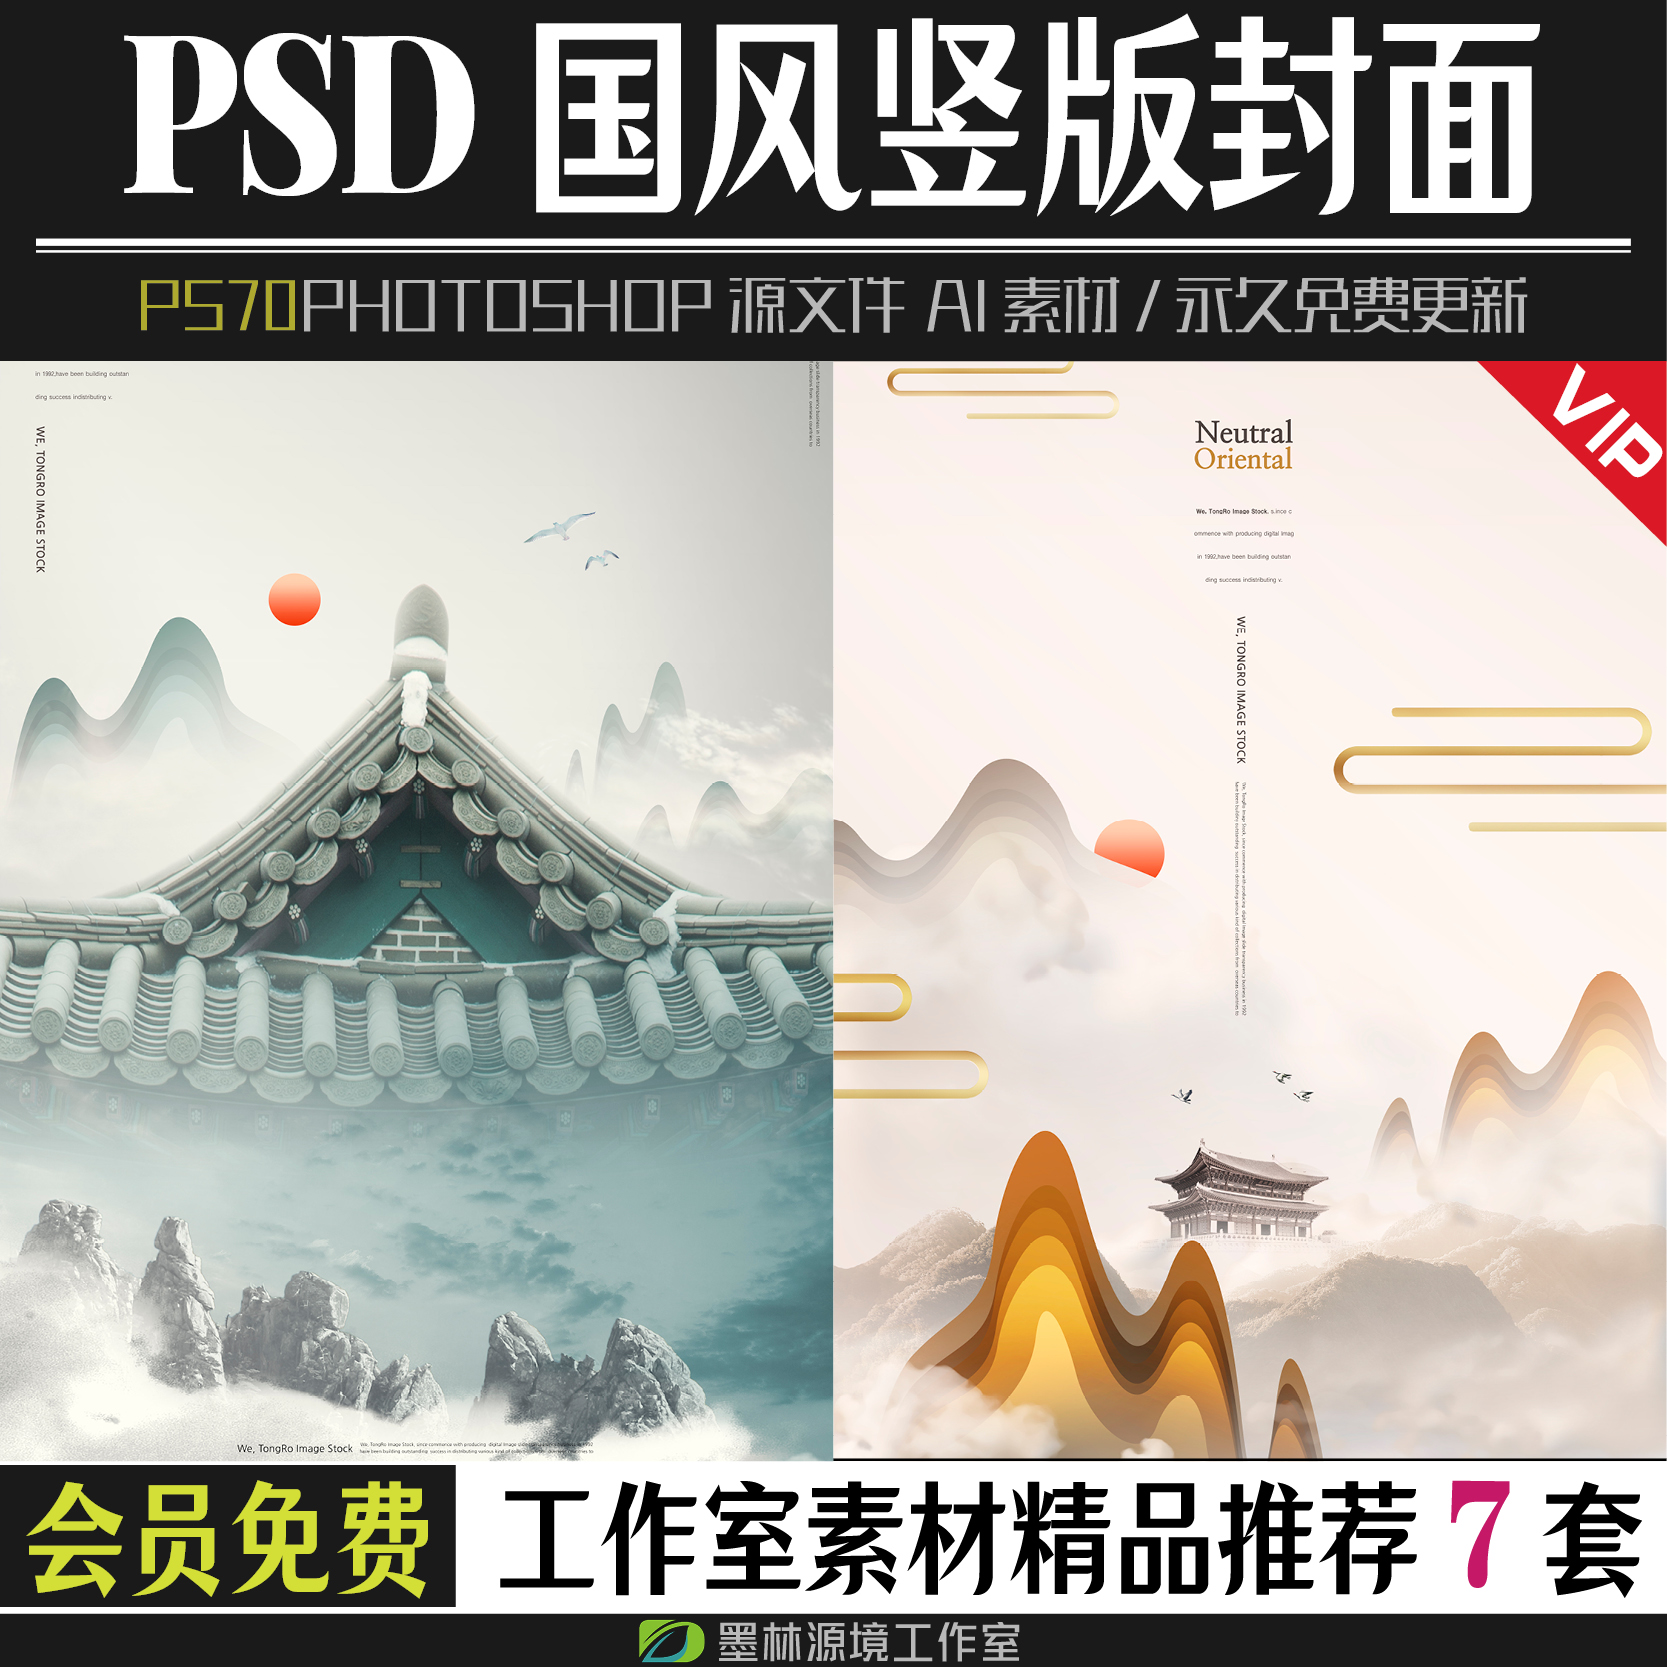 杂志广告文案古风中国风竖版封面模板photoshop素材PSD源文件